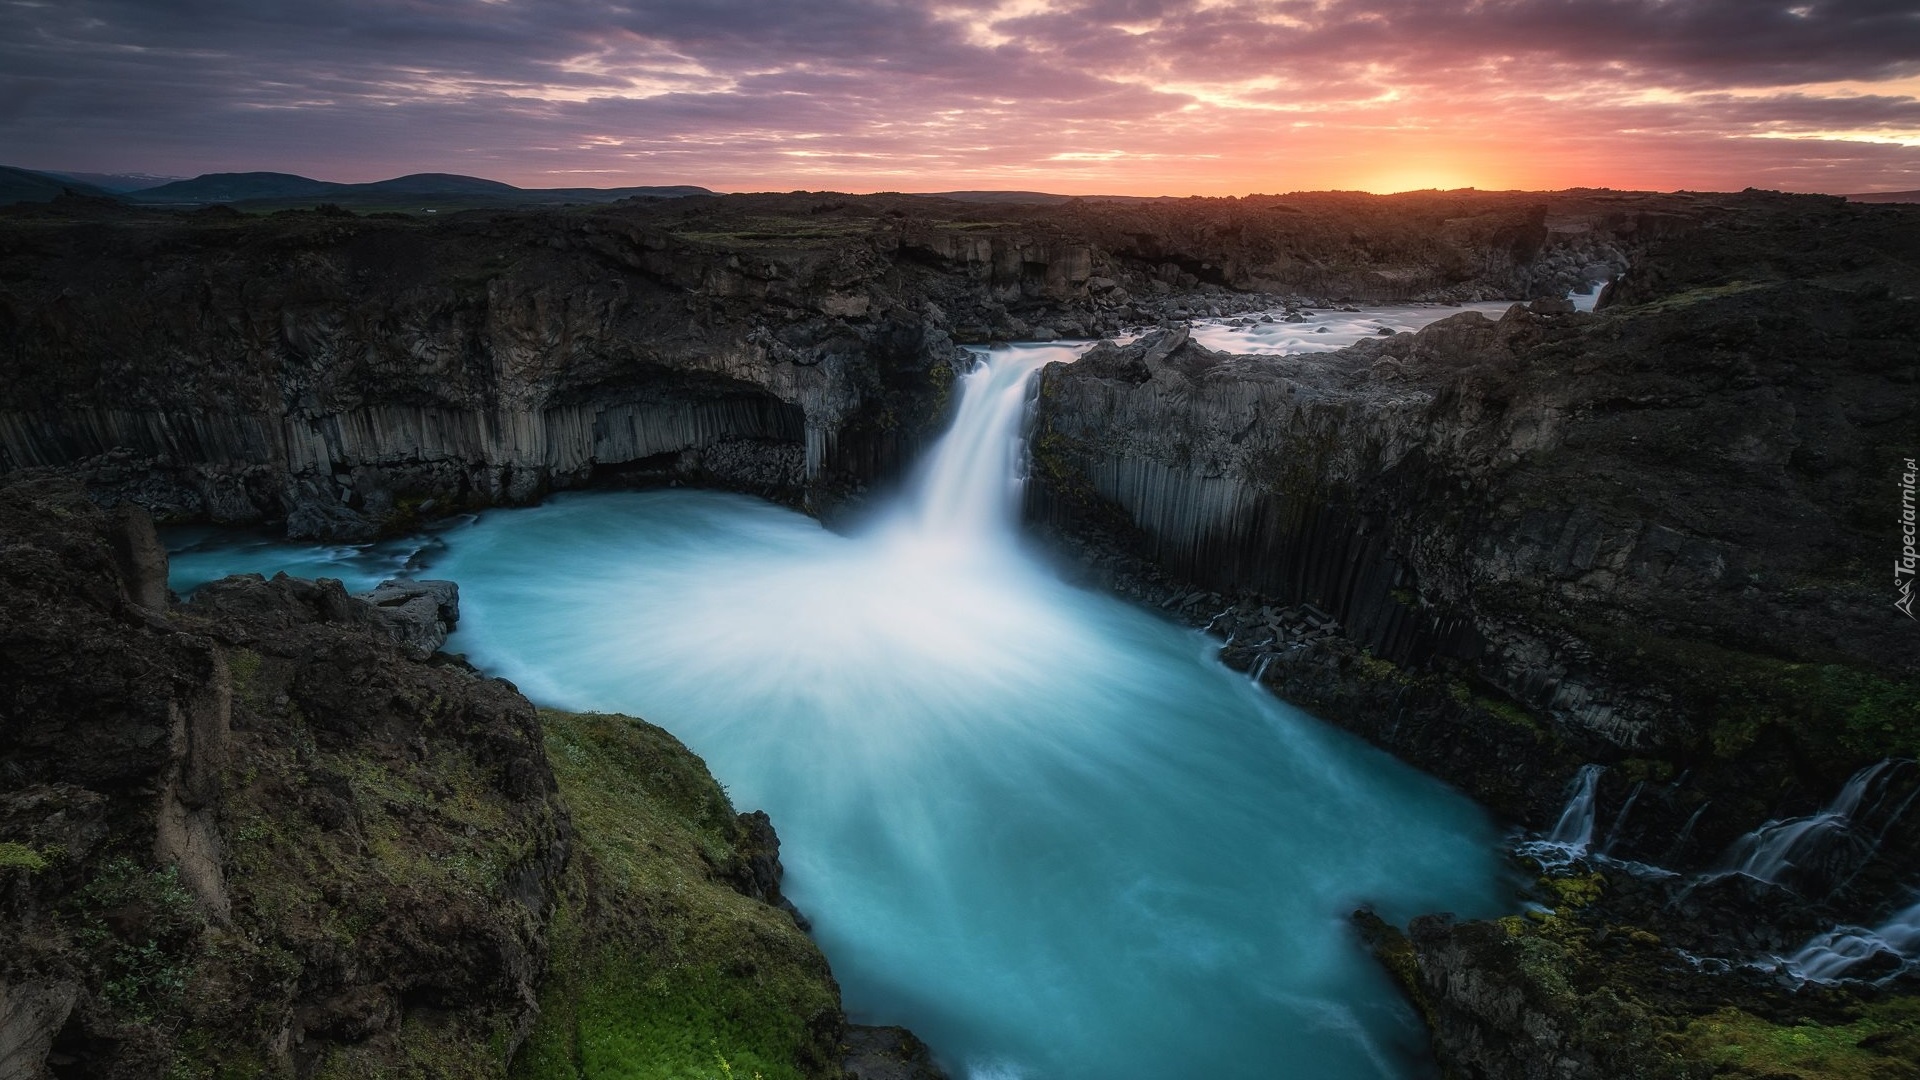 Islandia, Wodospad Aldeyjarfoss, Bazaltowe, Skały, Rzeka Skjalfandafljot, Zachód słońca